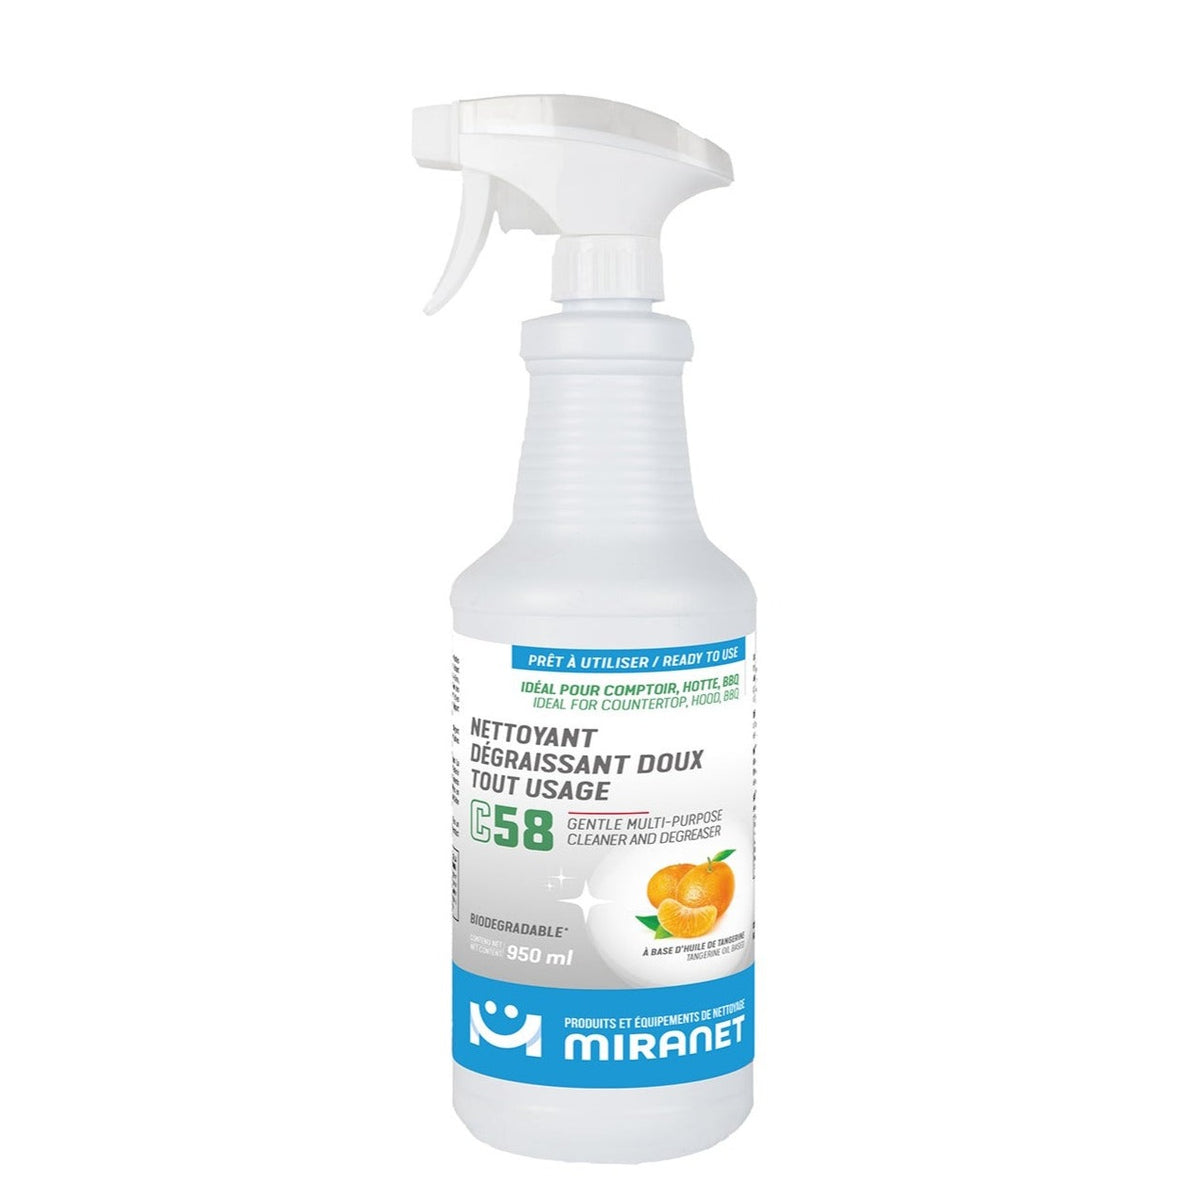 Nettoyant dégraissant doux tout-usage C58 biodégradable - Miranet